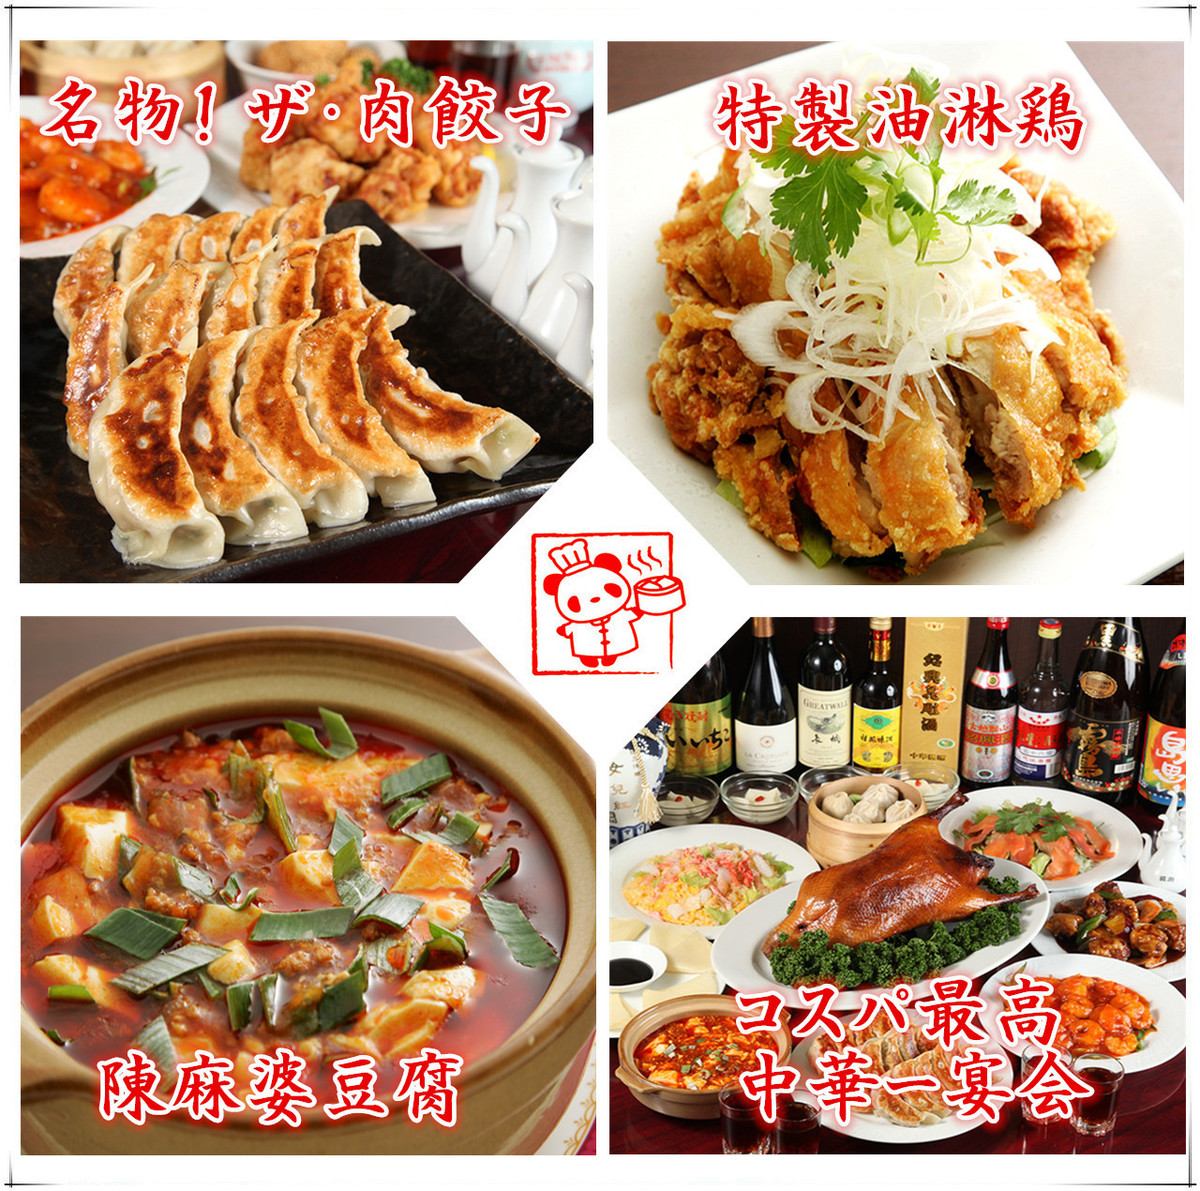 在正宗的中國“四川廚房”享用各種各樣的宴會，享用無限暢飲無限暢飲套餐